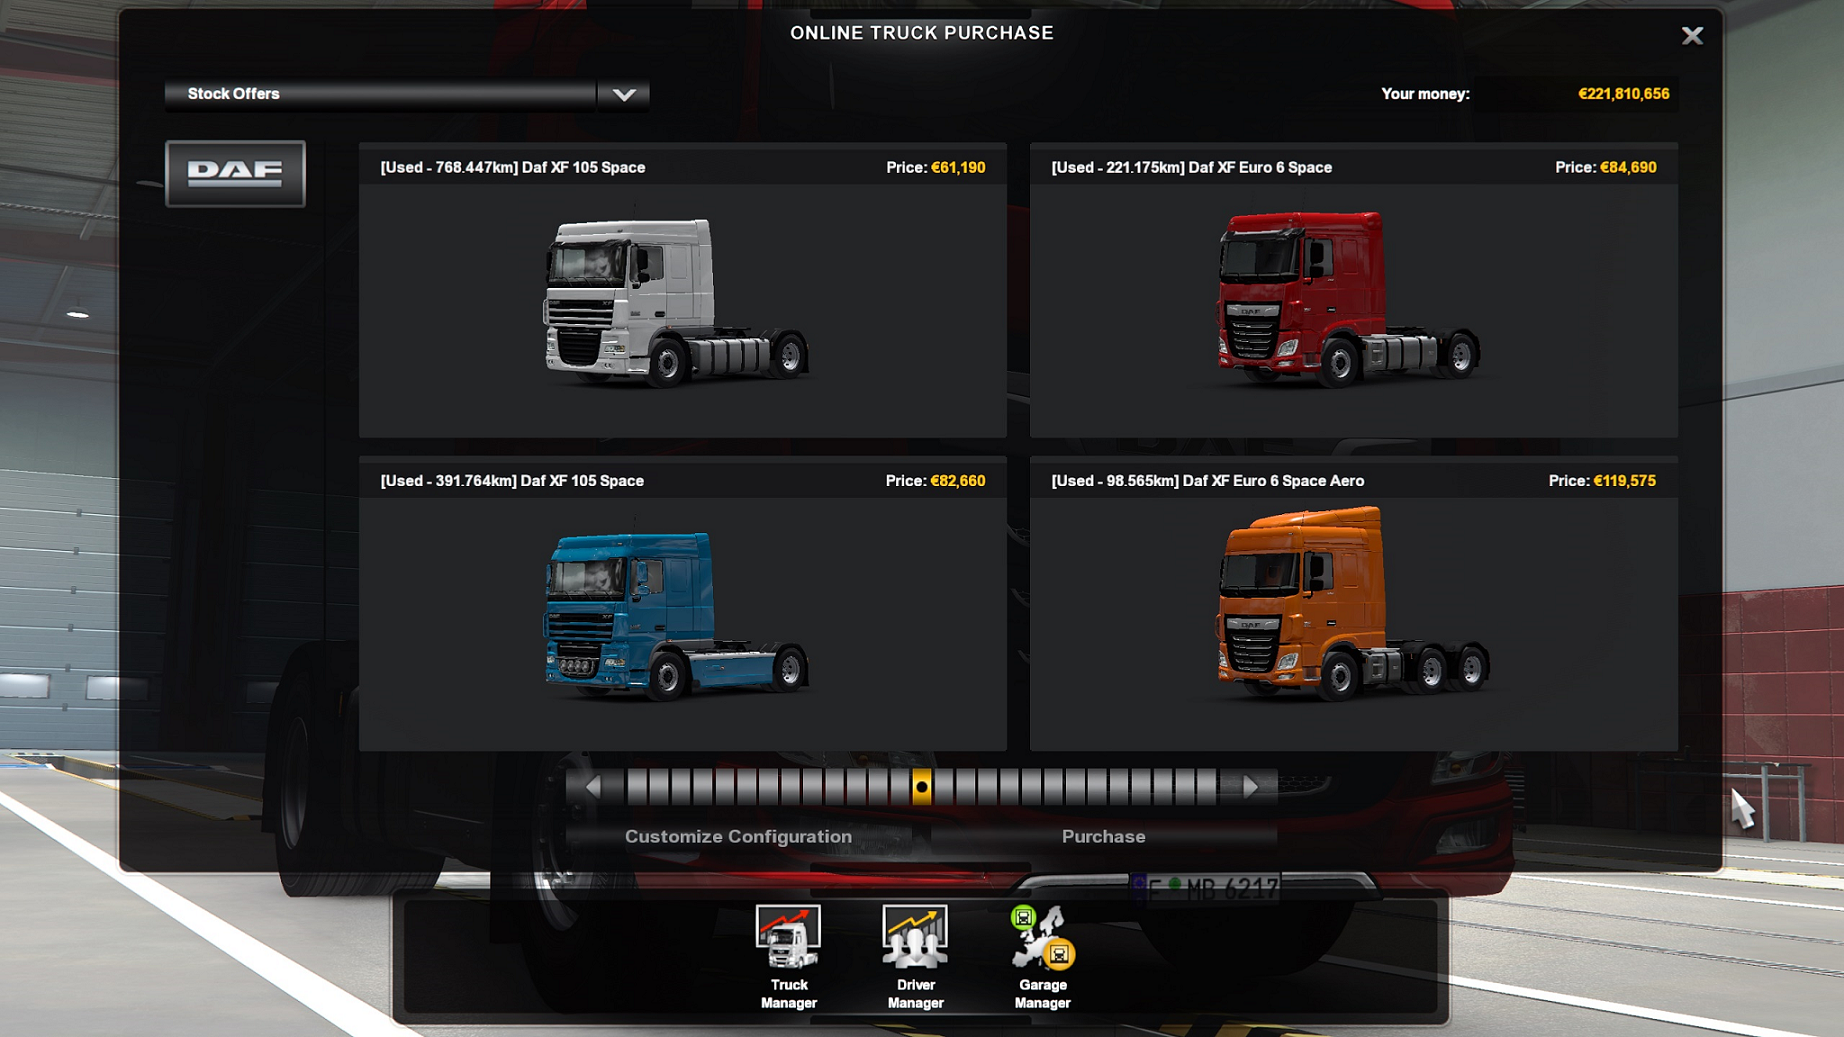 euro truck simulator 2 1.34.0.17 product key